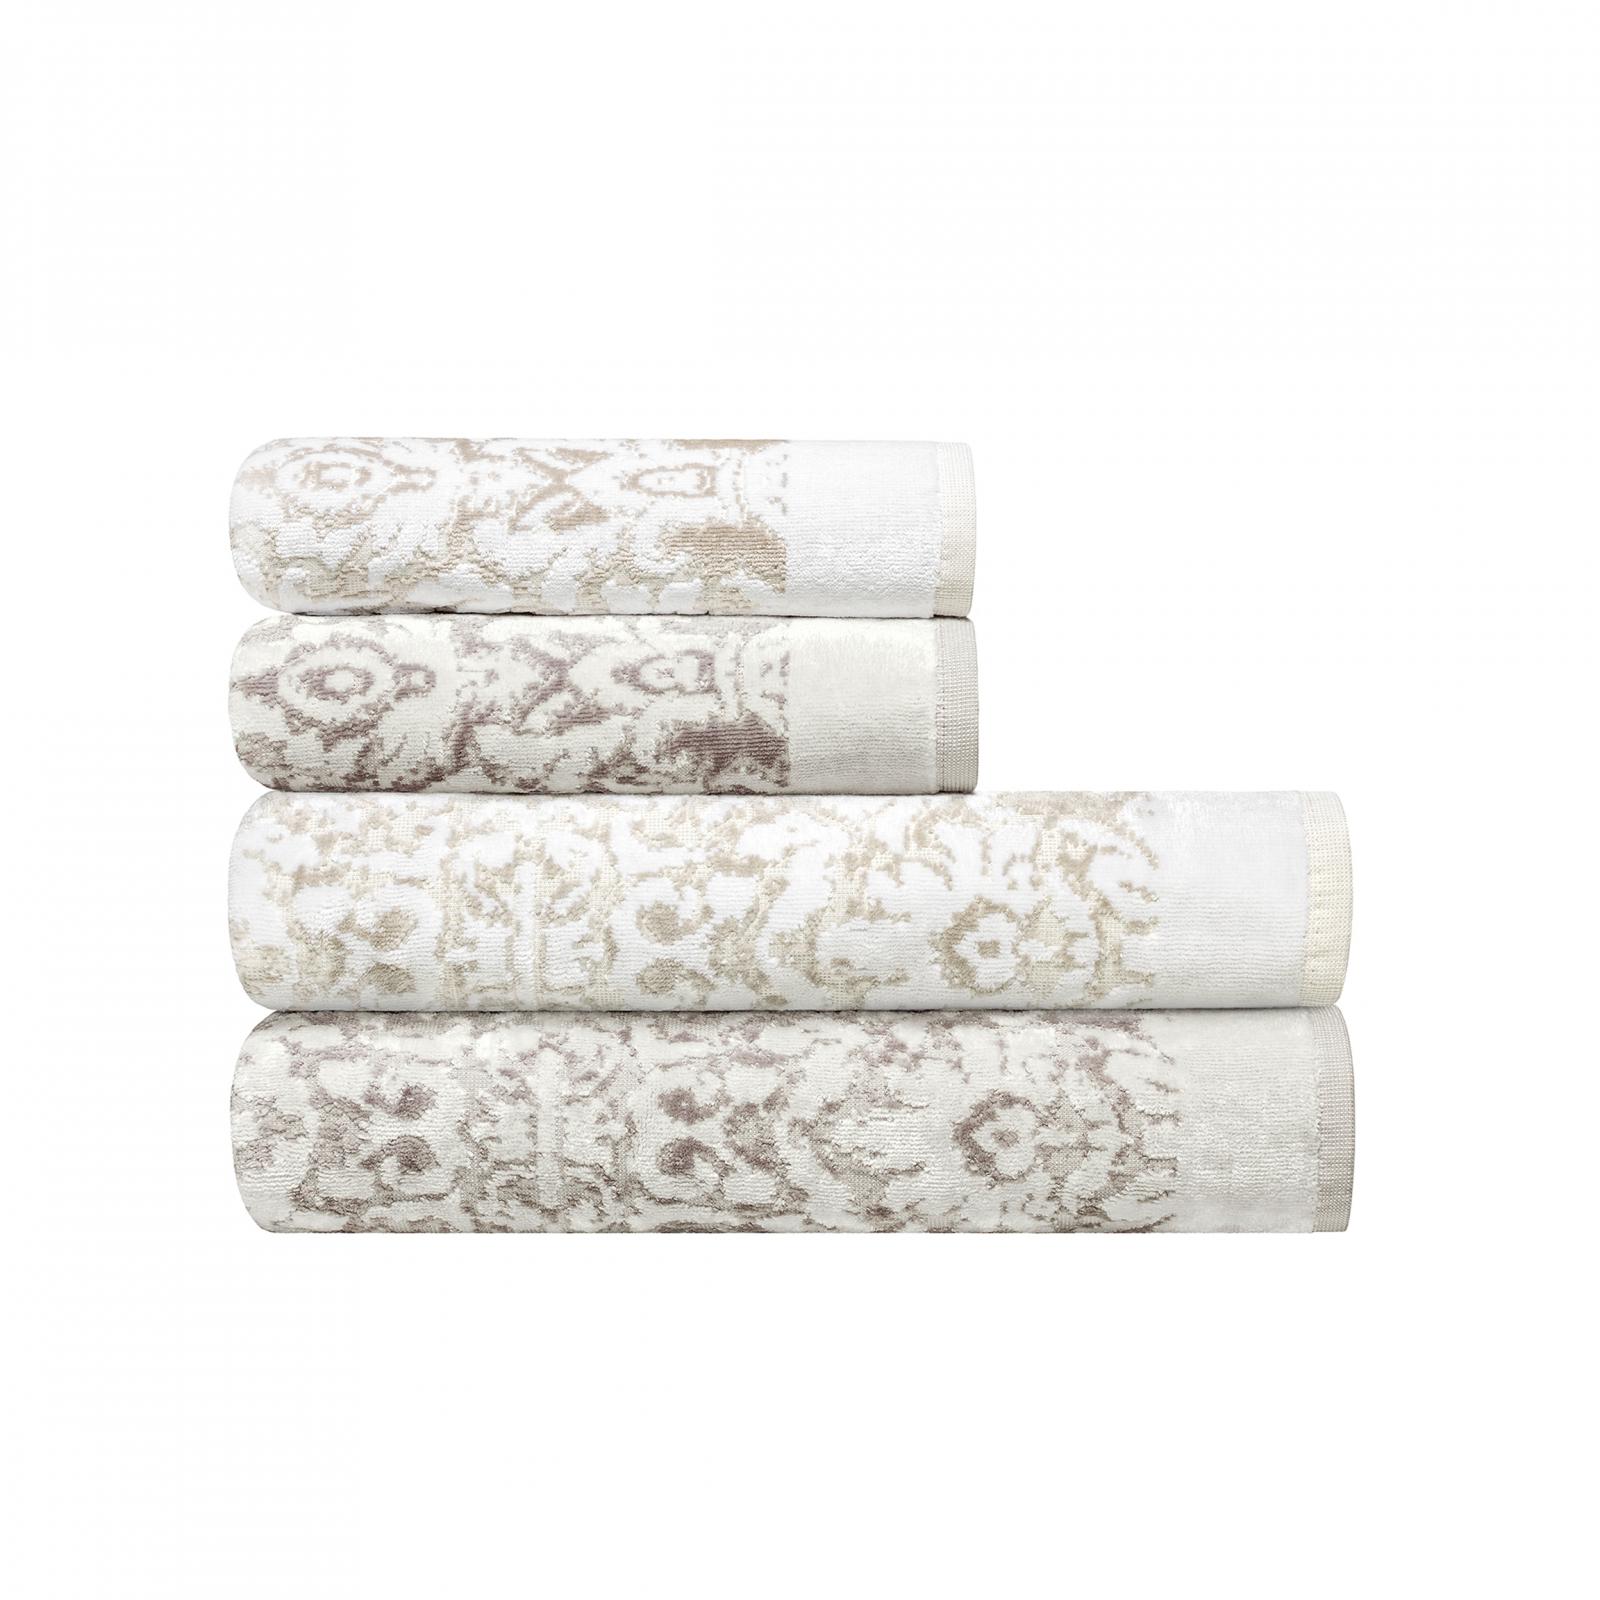 Комплект полотенец Togas Изар бежевый с белым и серым 4 шт. комплект полотенец togas джина белый с серым и розовым 50х100 70х140 см